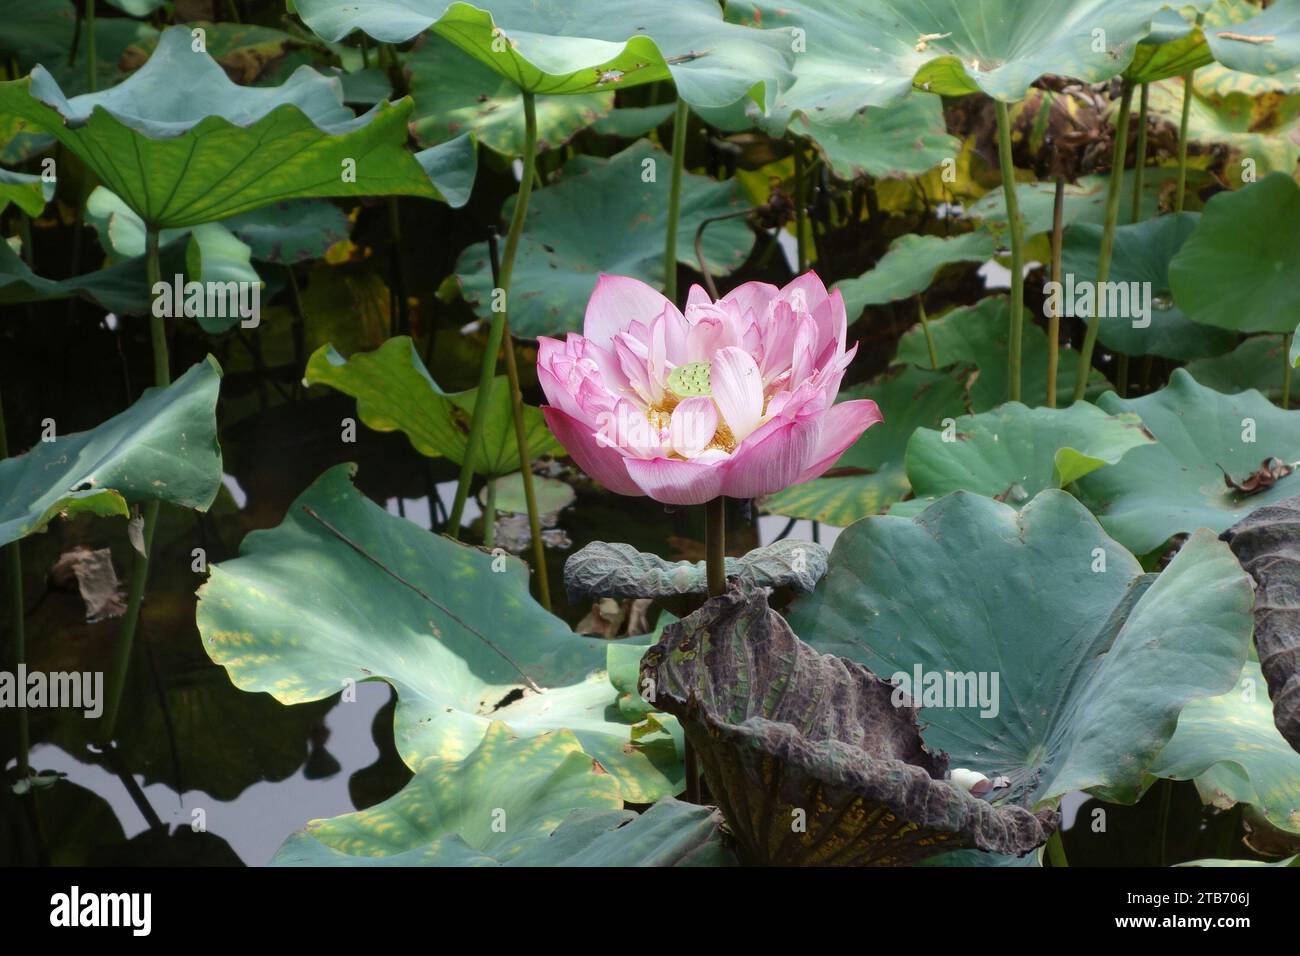 Pink Lotus in botanical garden pond Stock Photo